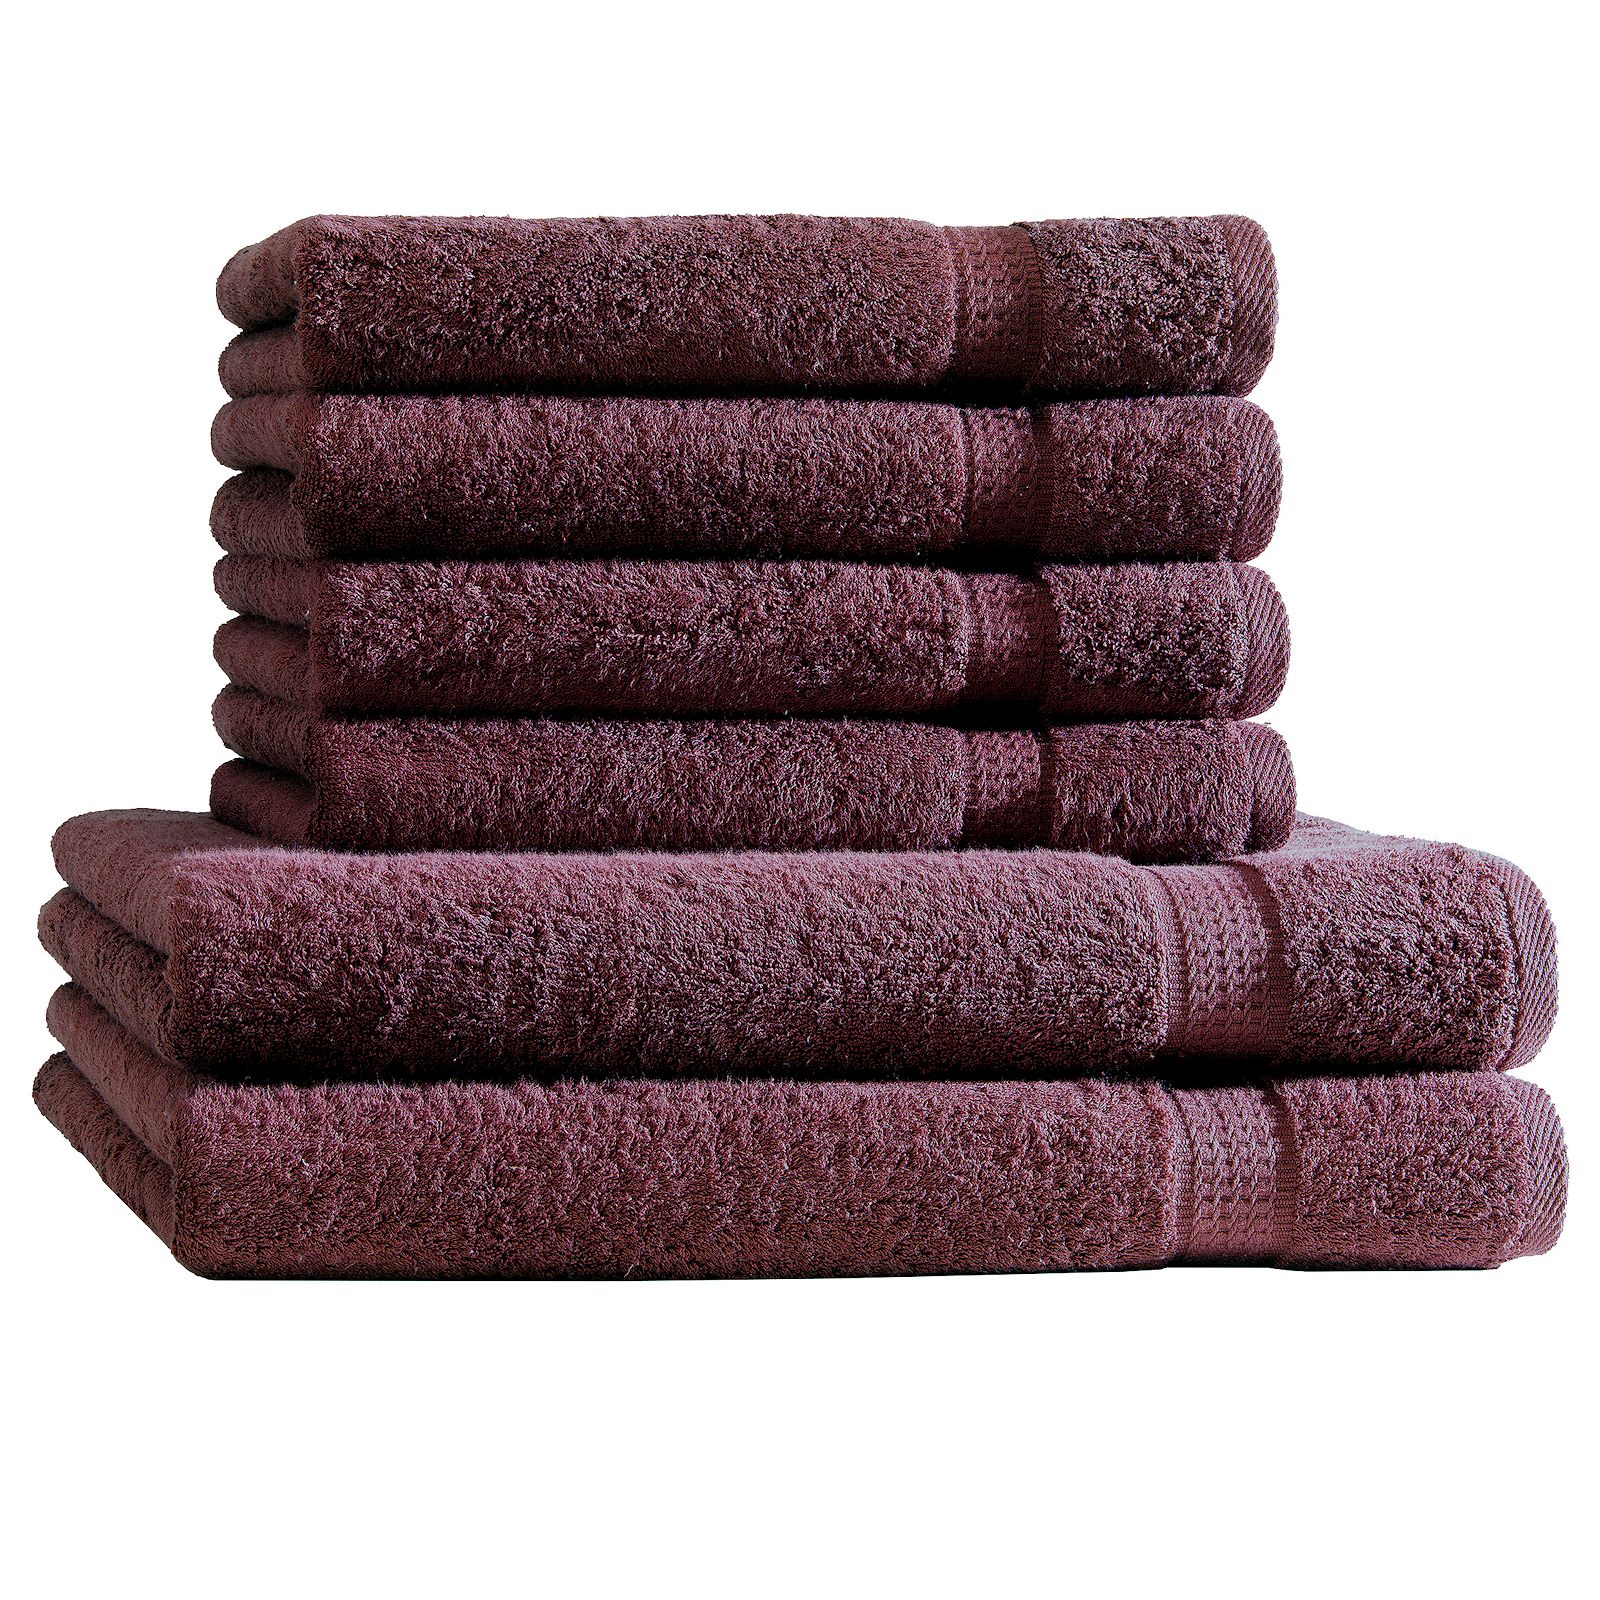 Handtuch Set 6tlg. 4 Handtücher 2 Duschtücher Duschtuch Frottee Baumwolle  6er | eBay